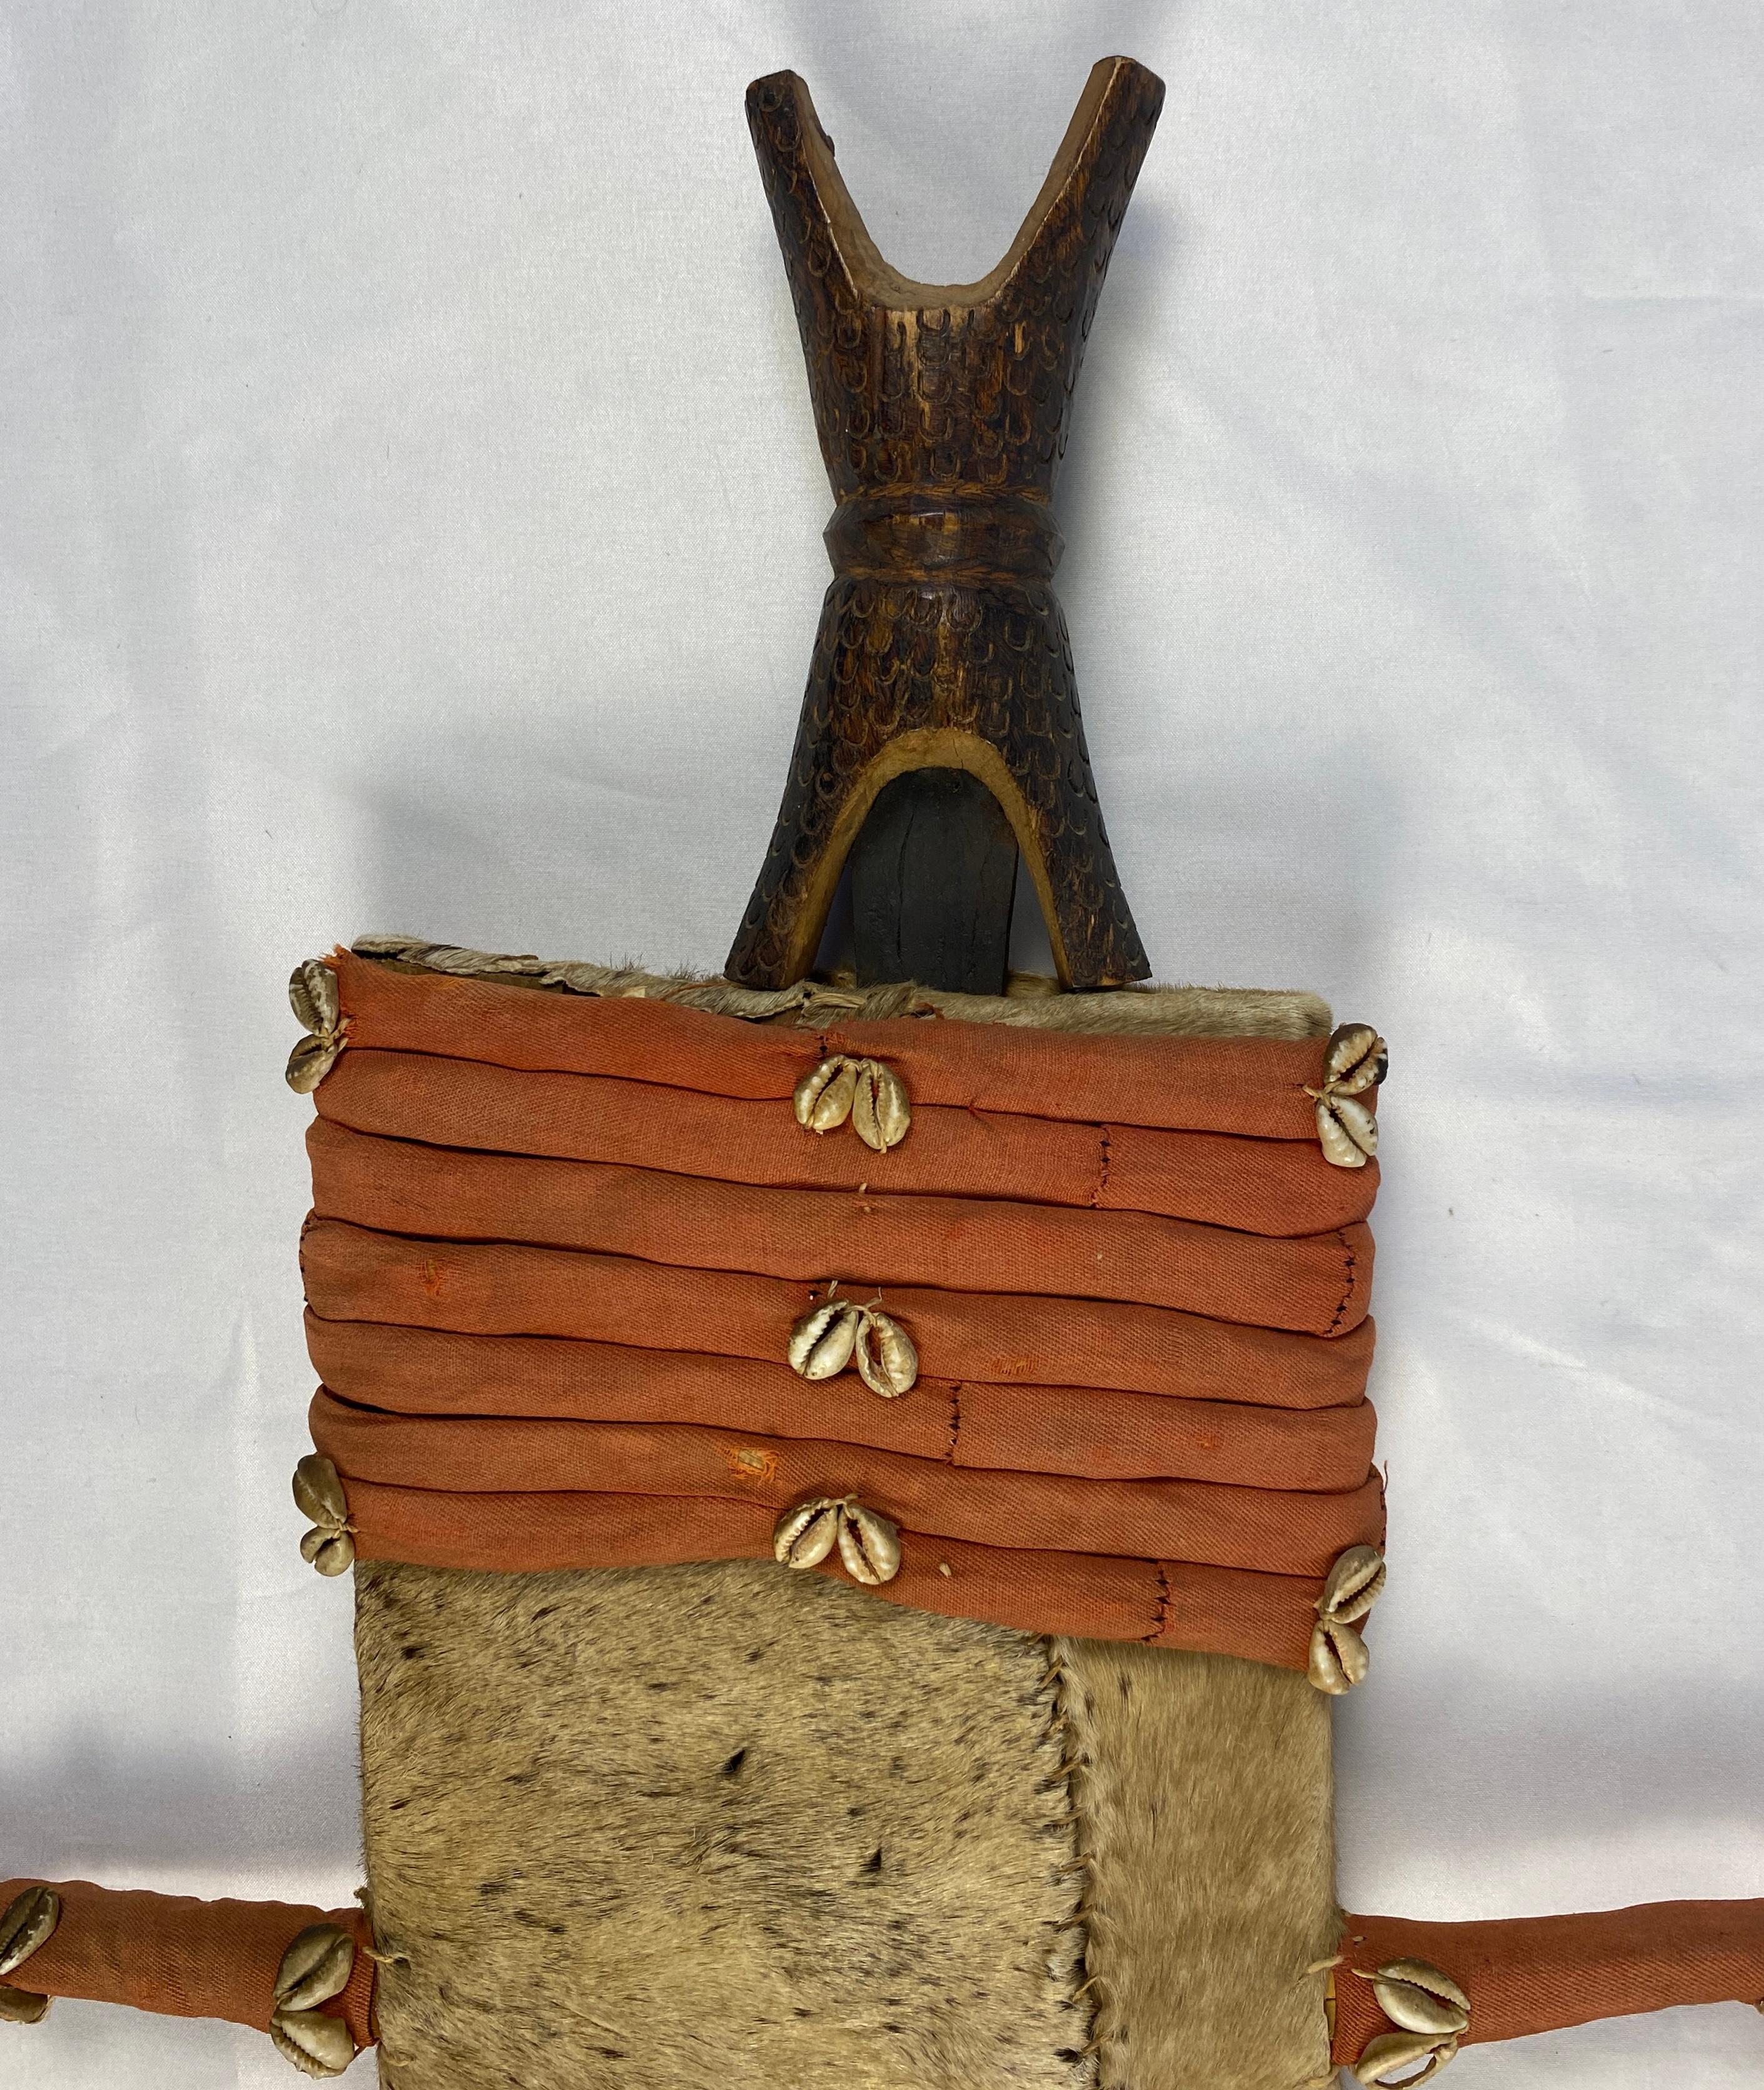 Épée de cérémonie africaine de la République démocratique du Congo, vers 1920. Du fer et du bois, dans un étui fait de tissu et de peau d'animal.

Cette épée tribale, symbole de statut, est portée par une lame de fer à bord unique, gravée de motifs